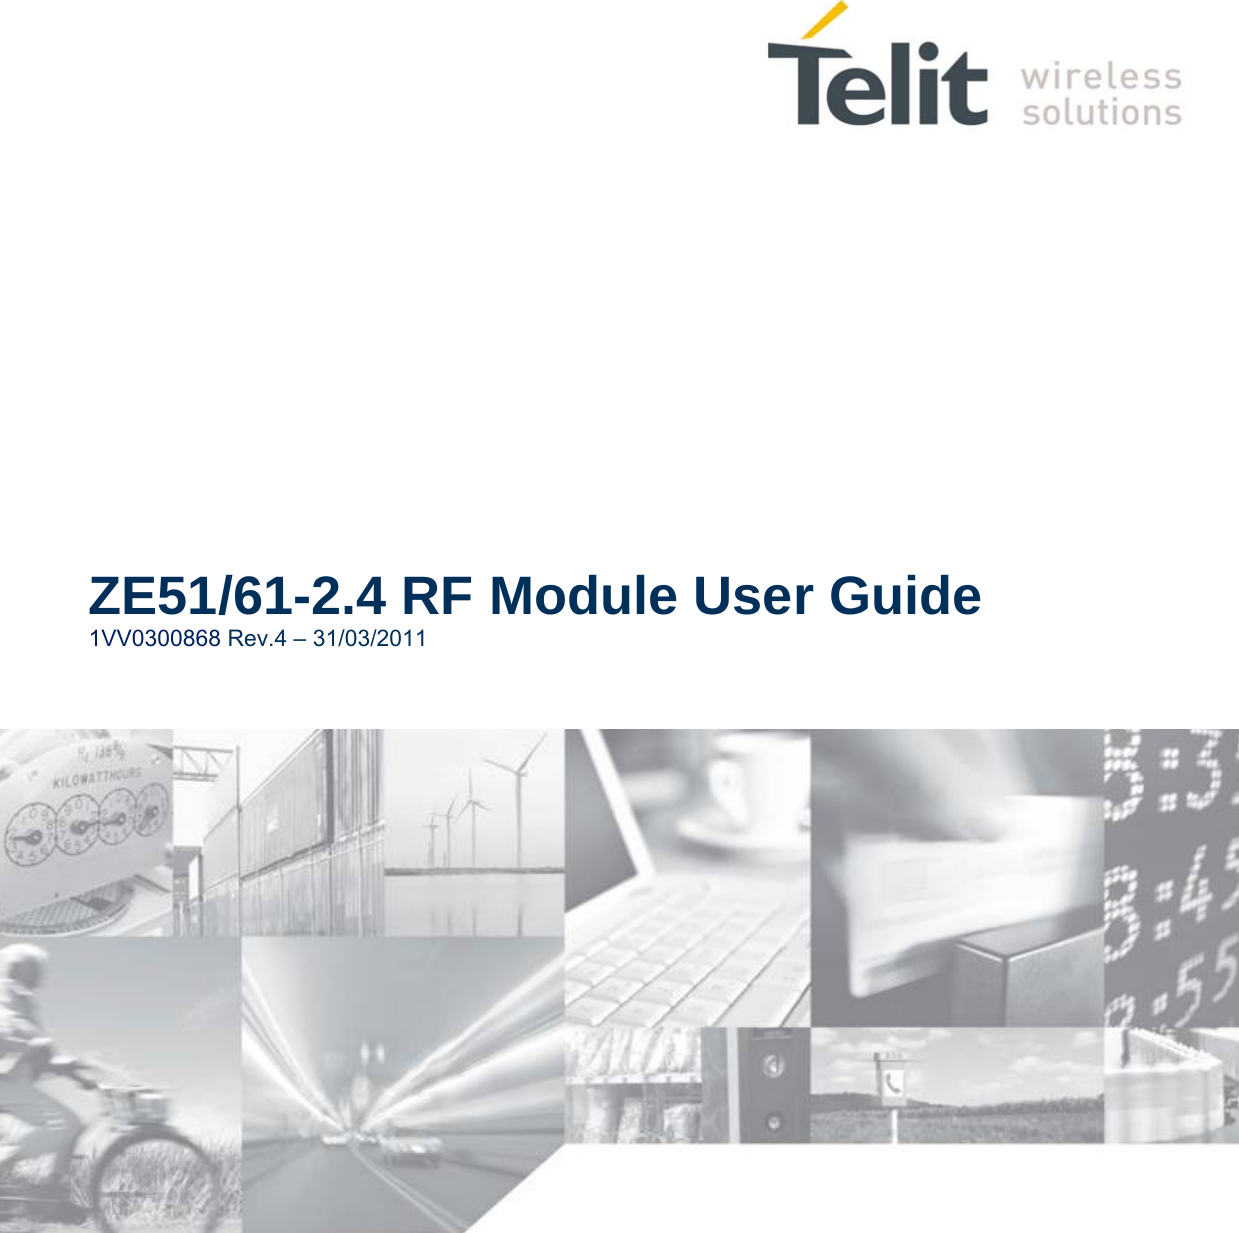  ZE51/61-2.4 RF Module User Guide 1VV0300868 Rev.4 – 31/03/2011                            